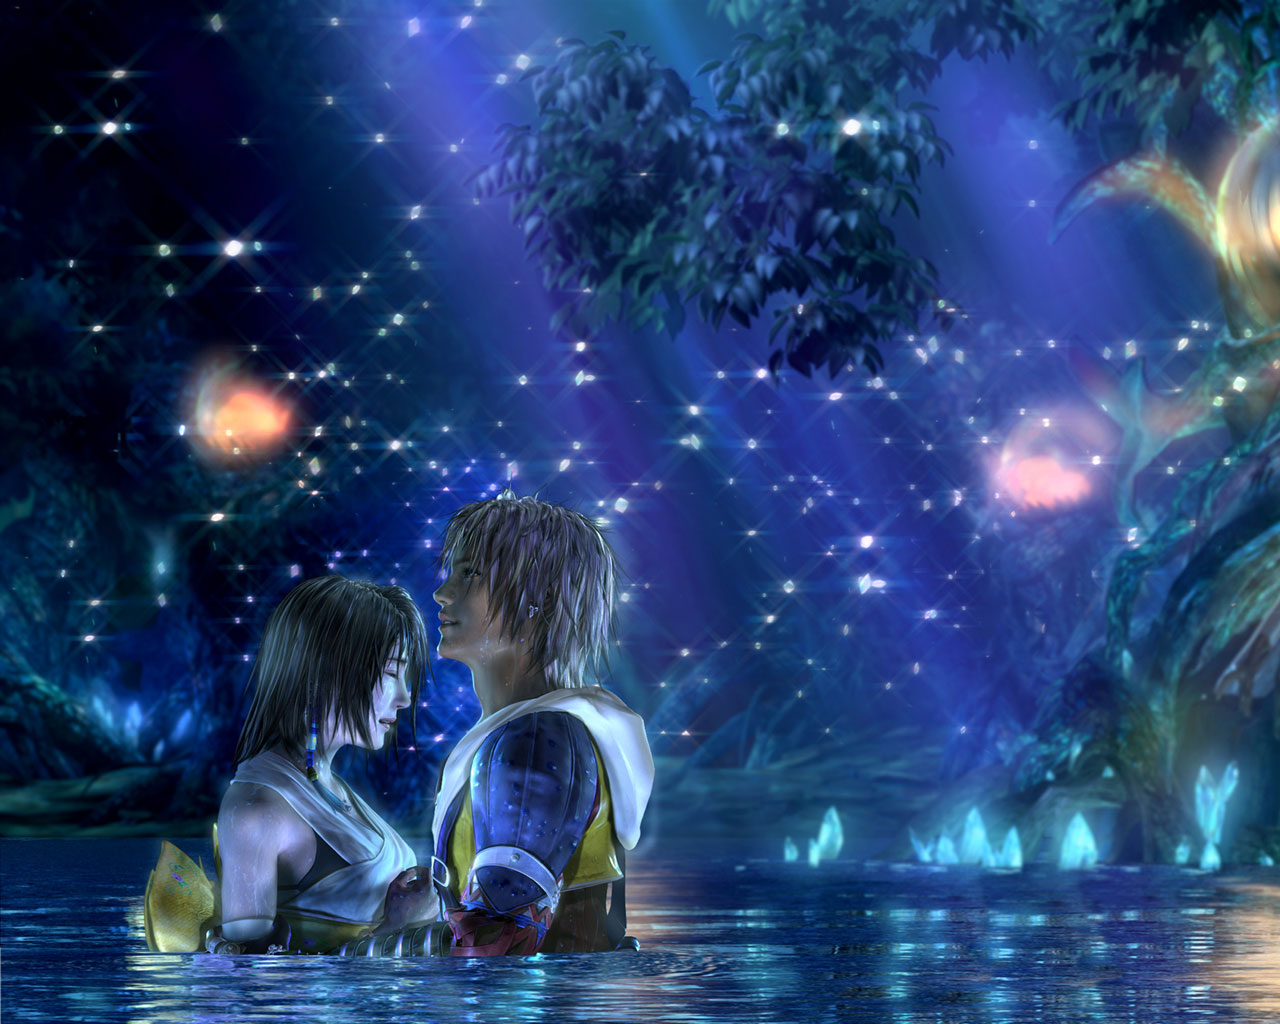 Final Fantasy X HD Background Wallpaper Ffx Yuna